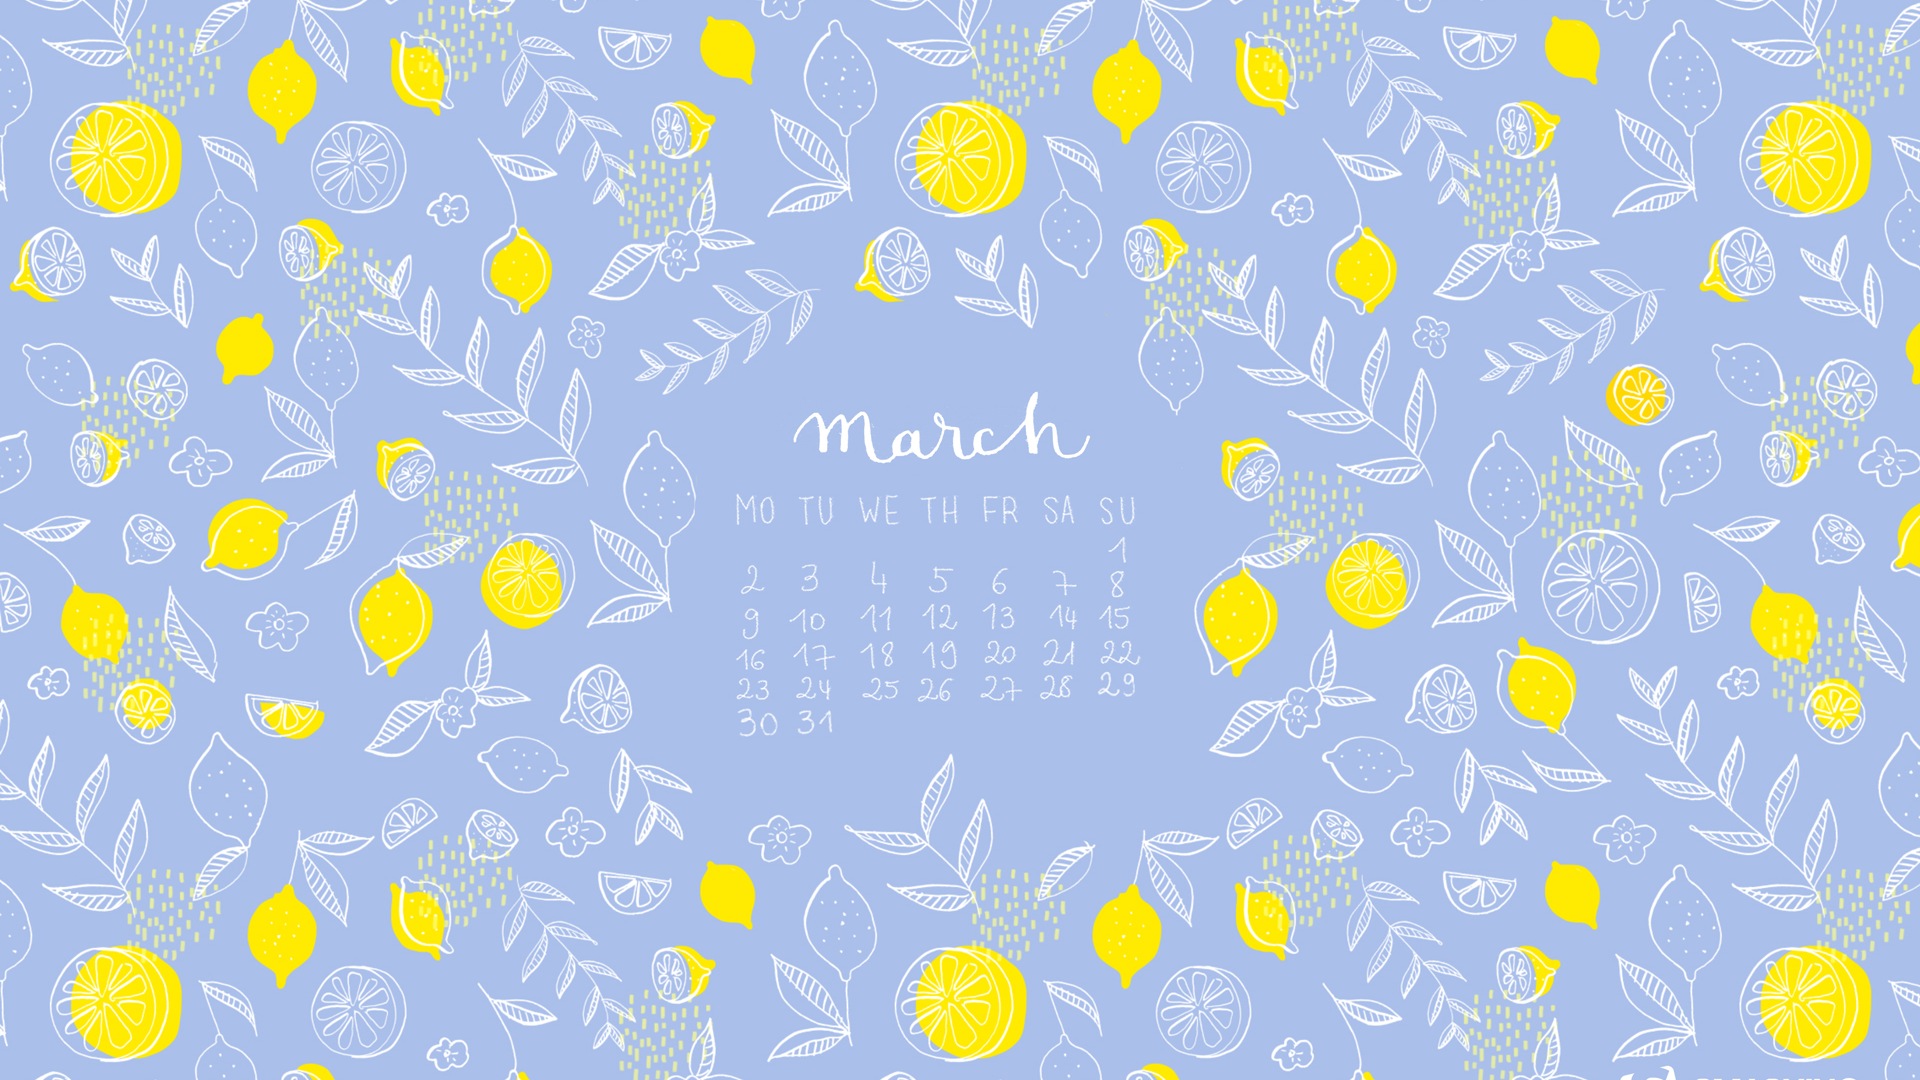 Март 2015 Календарь обои (2) #9 - 1920x1080